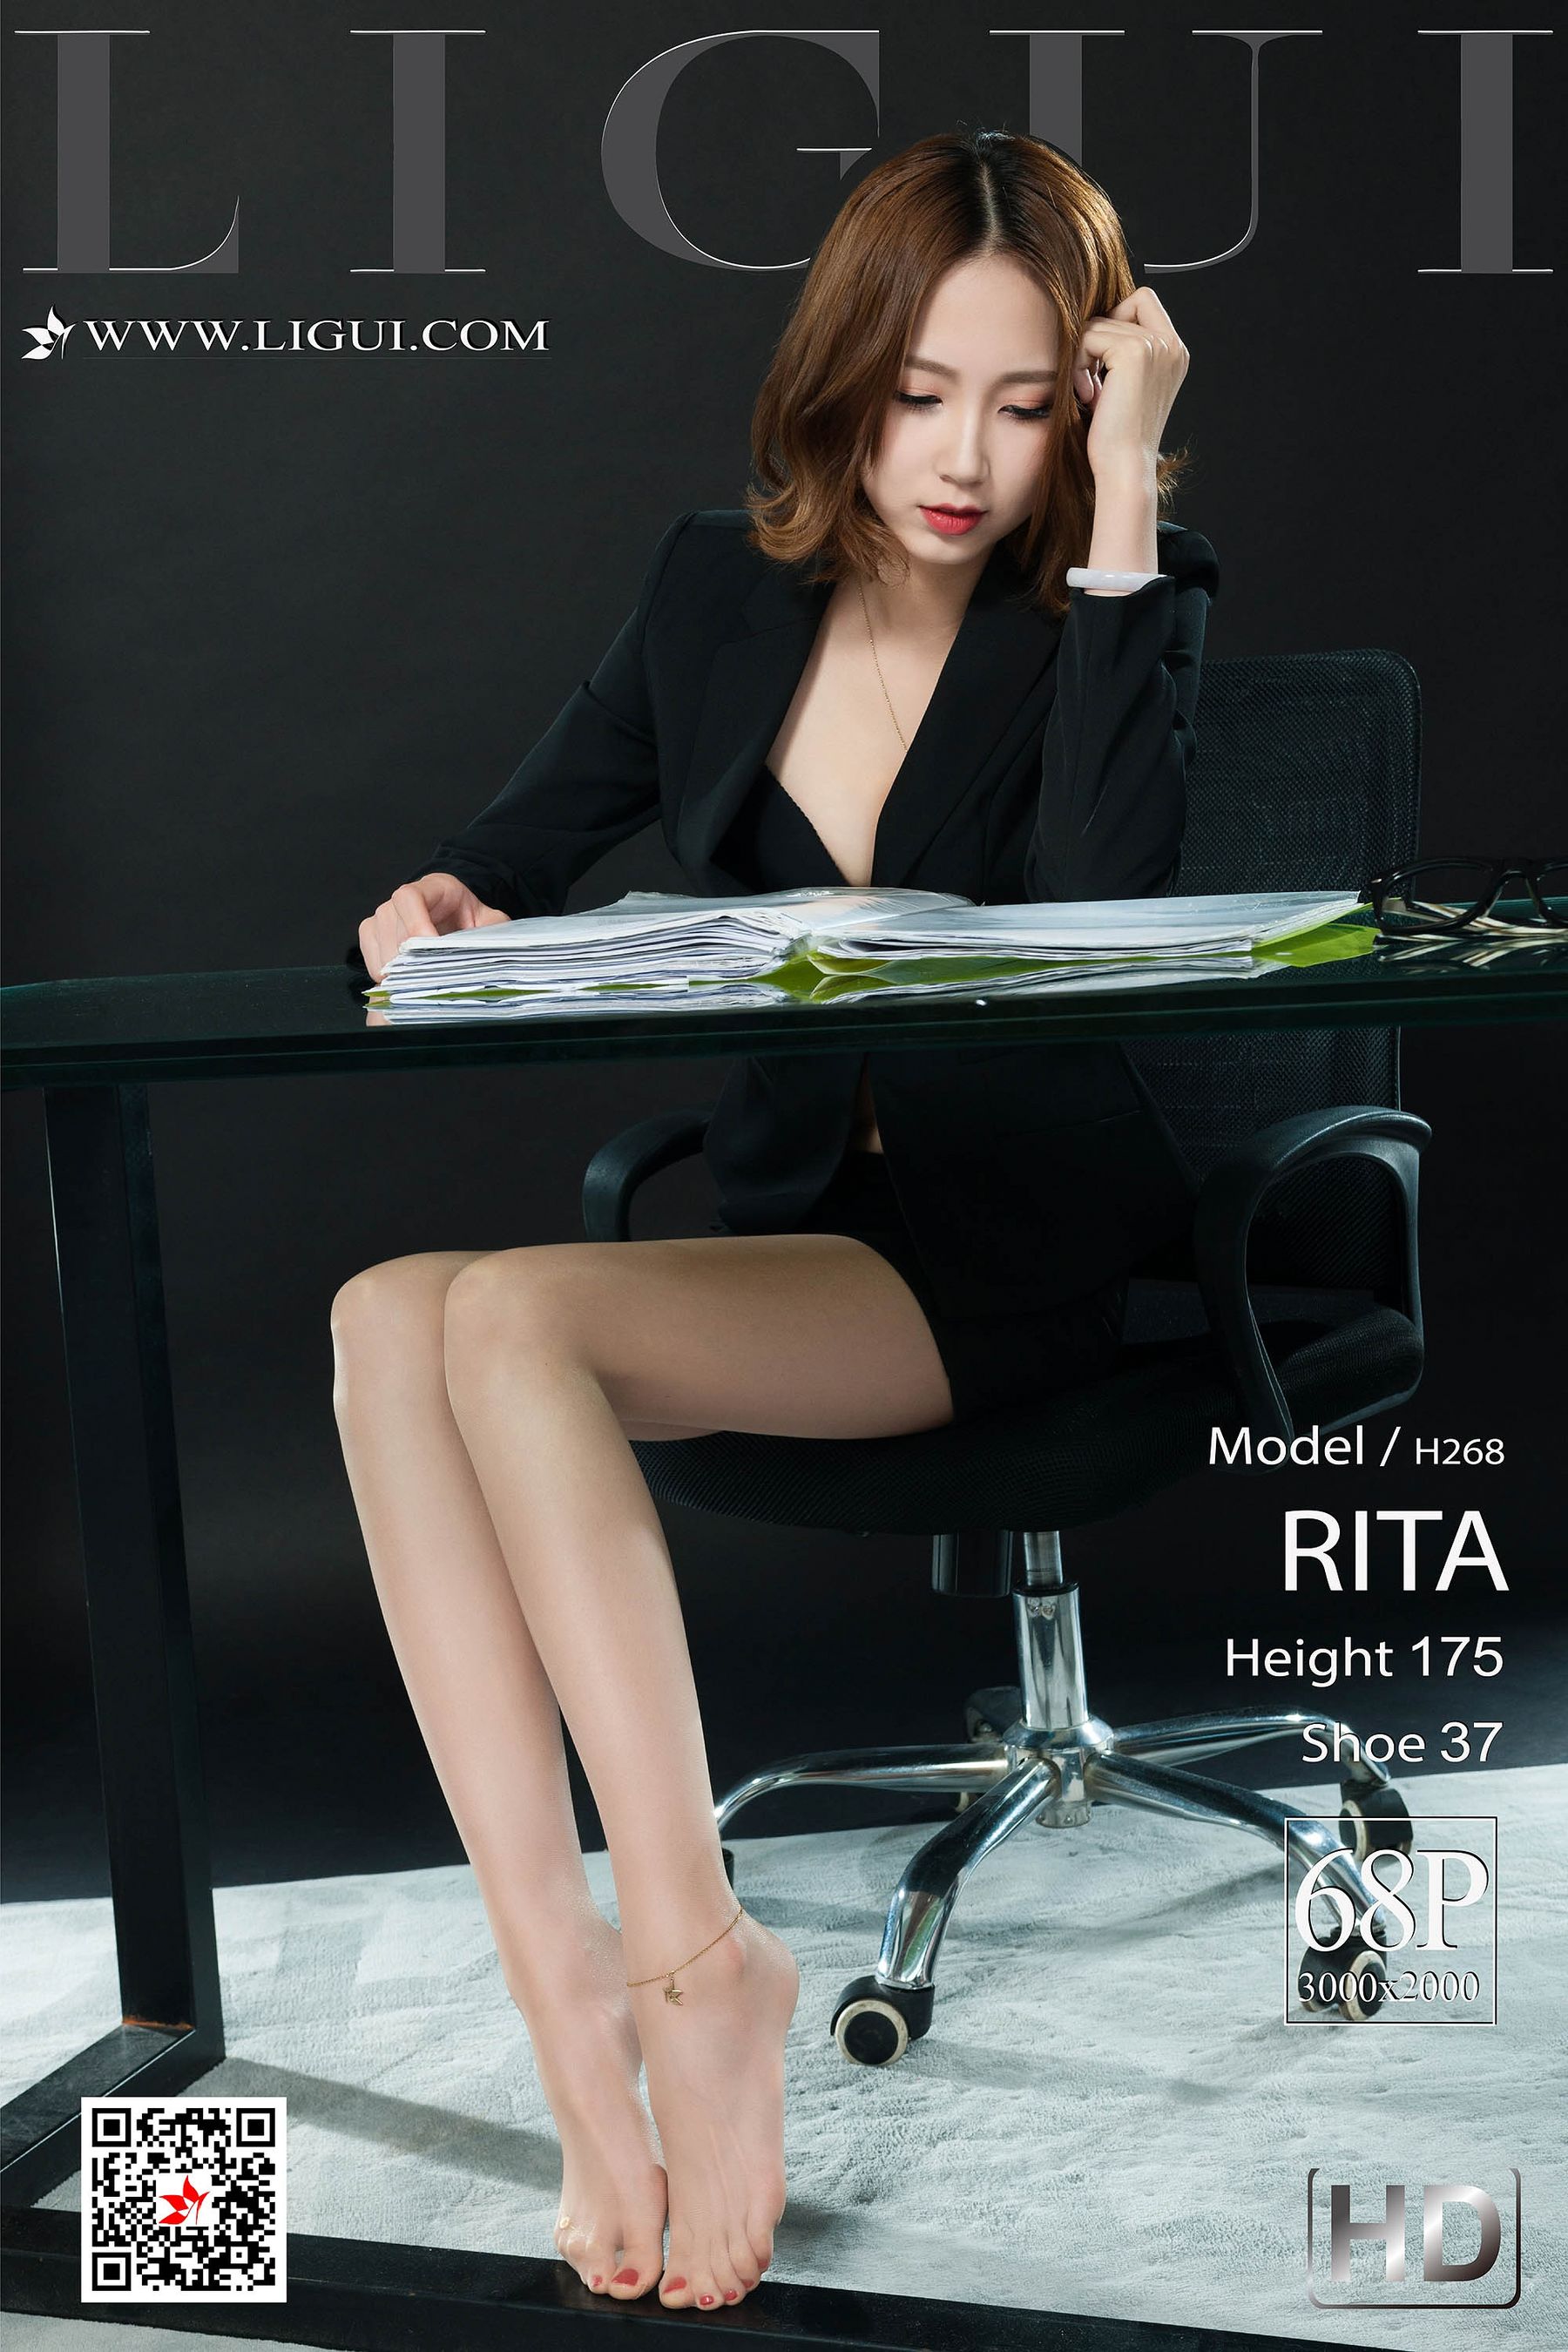 [丽柜LiGui] 网络丽人 Model RITA